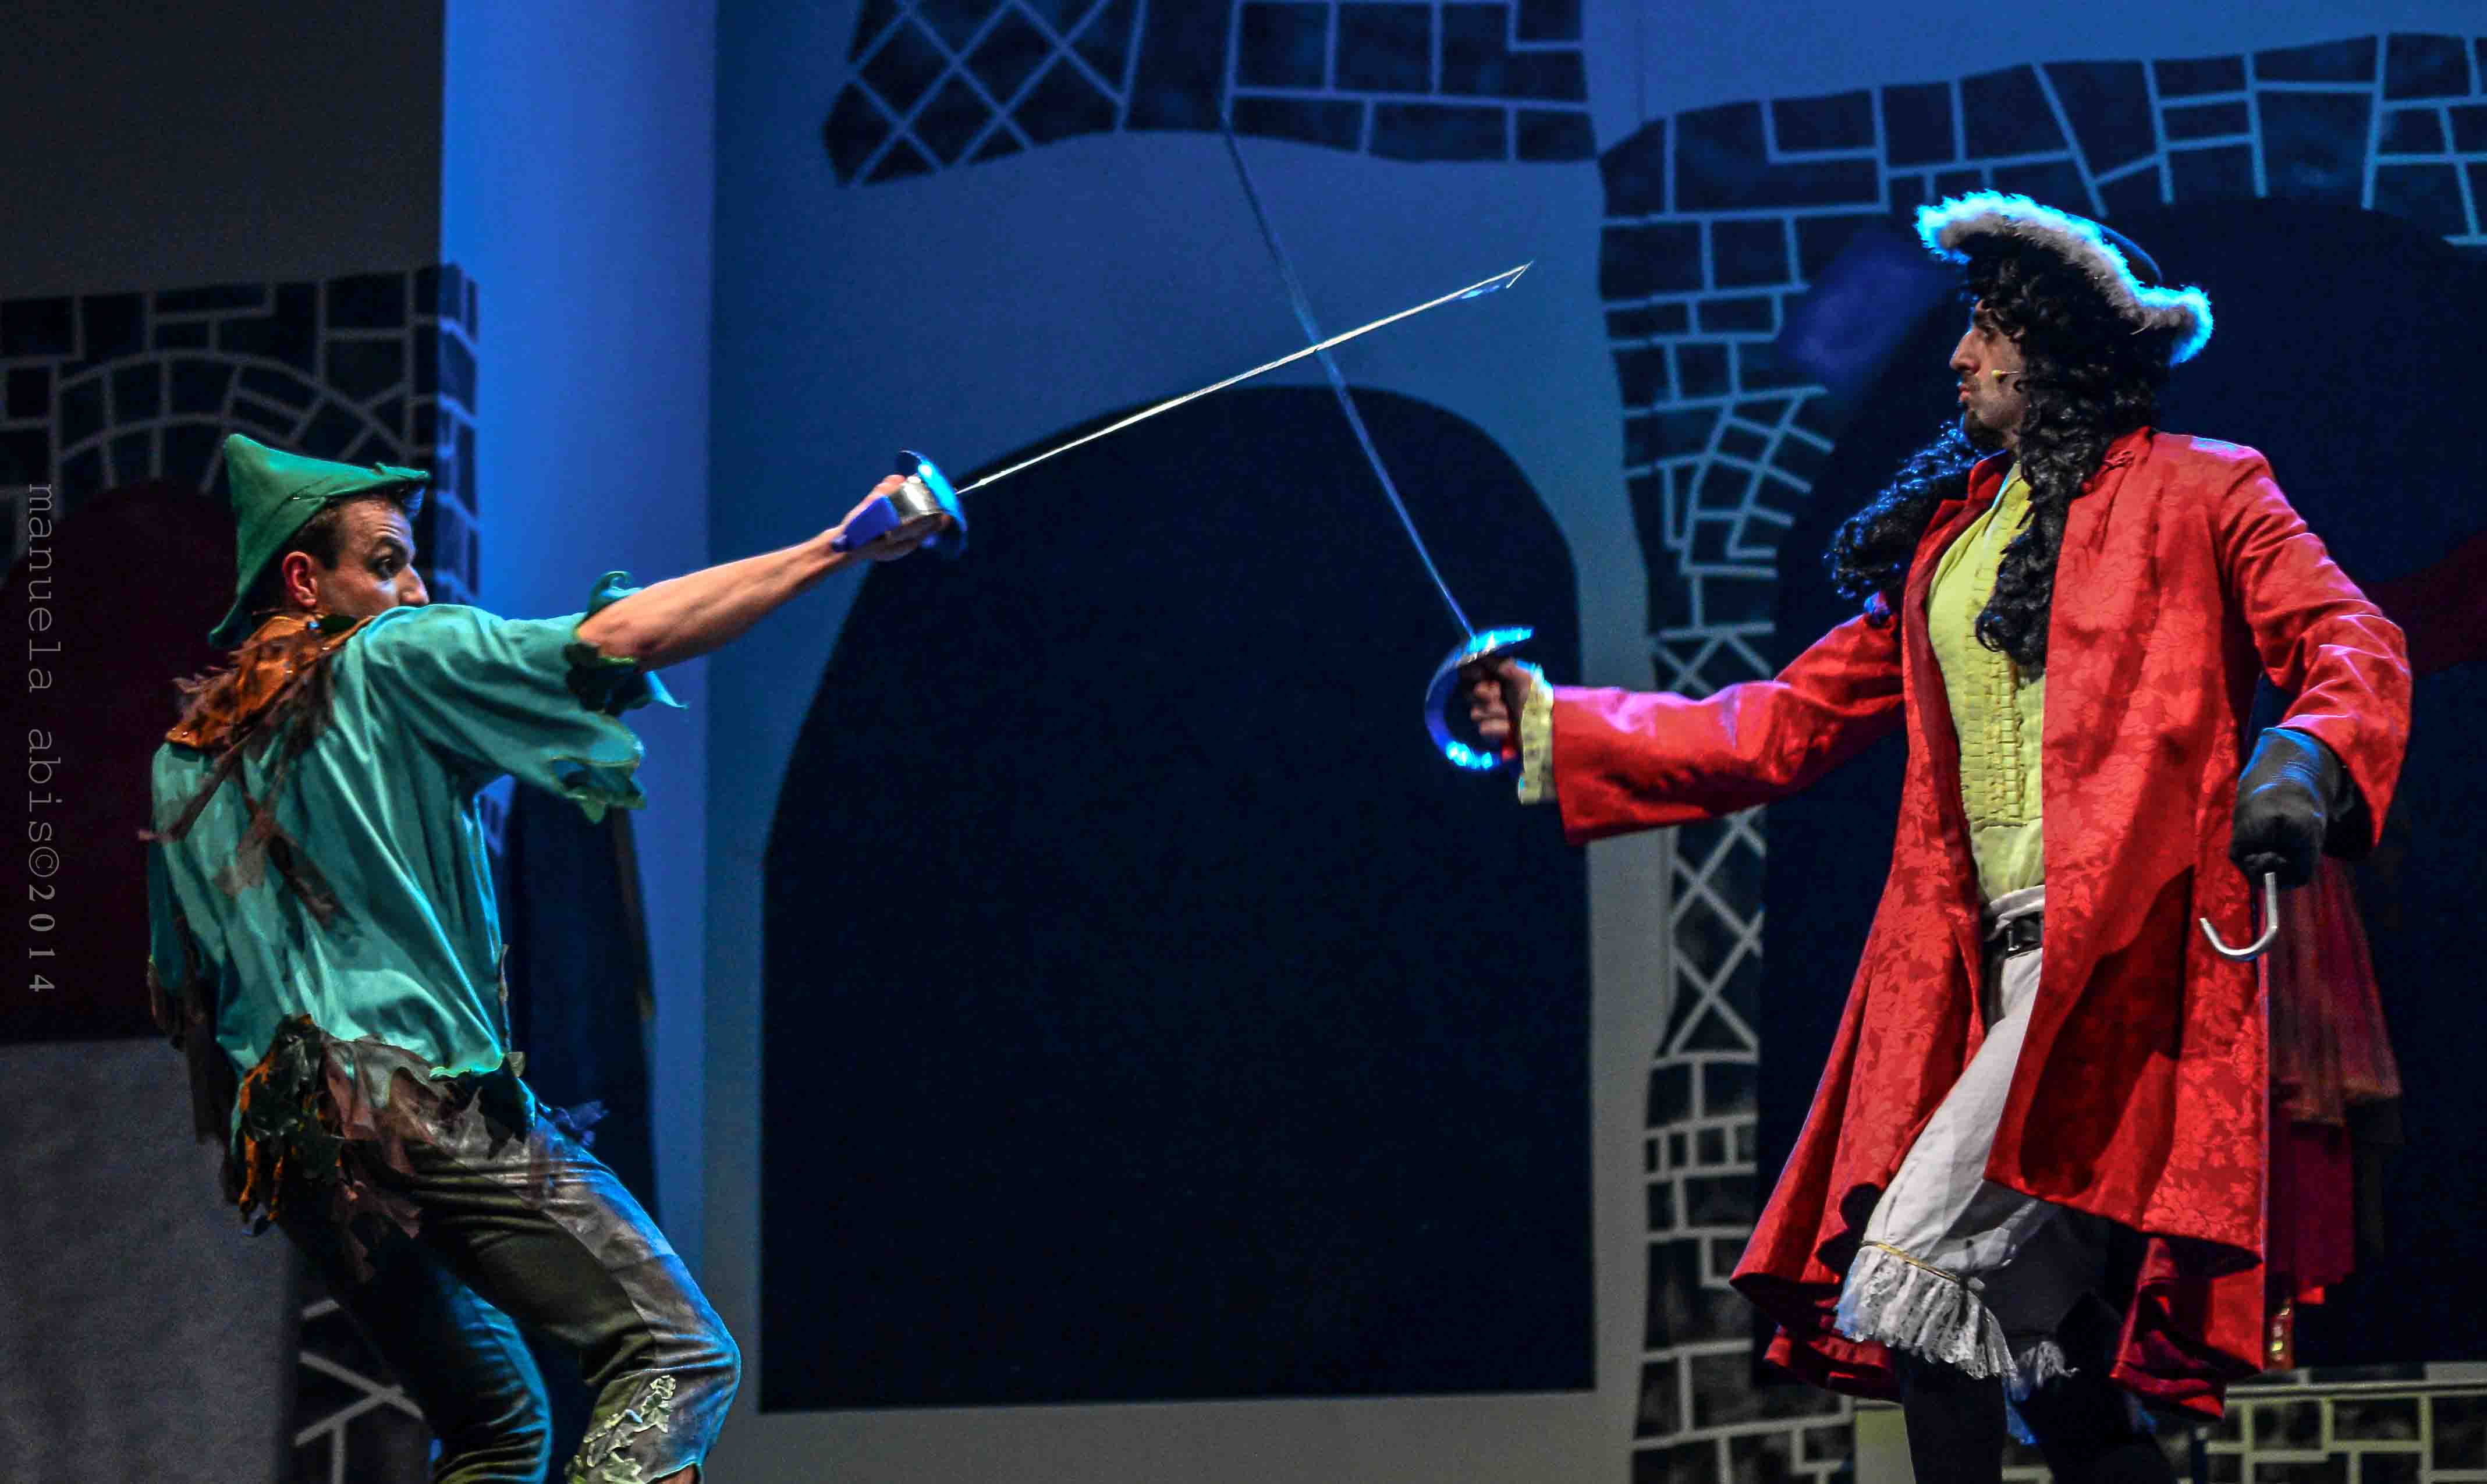 Peter Pan il musical, con la compagnia Fantateatro al Teatro Superga il 3 febbraio